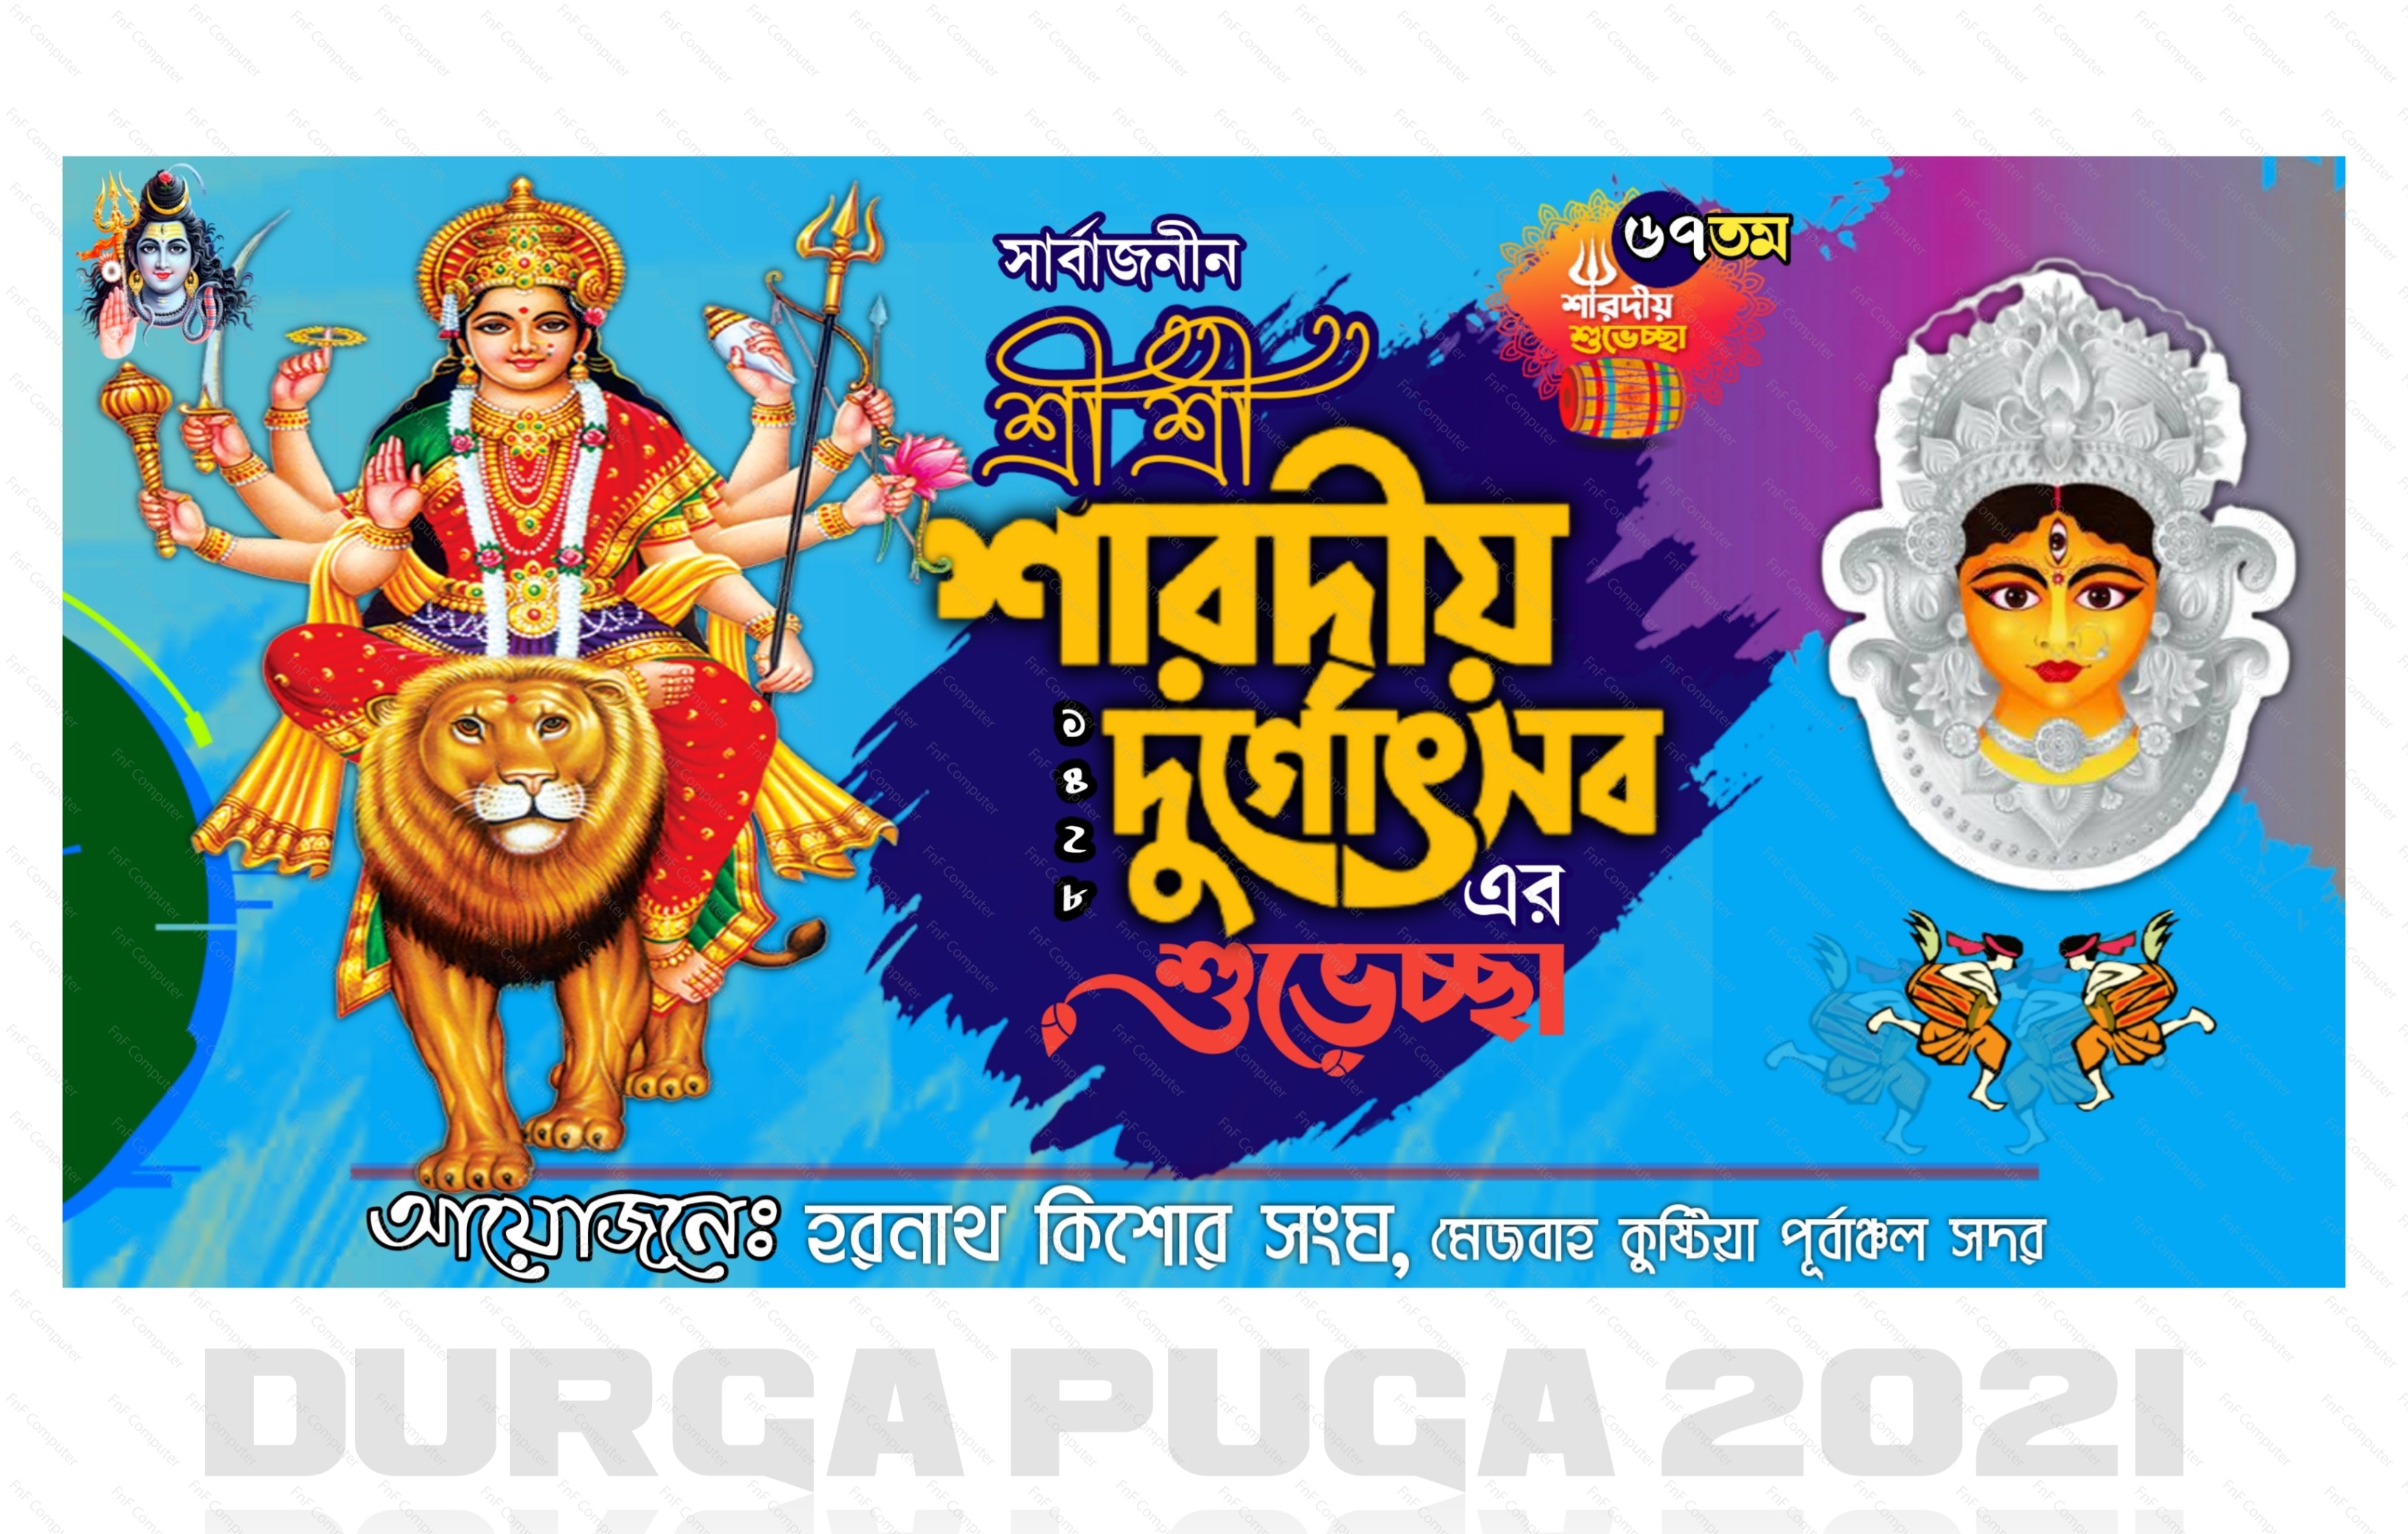 শারদীয় দূর্গাপূজার ব্যানার ( Durga Puja 2021)